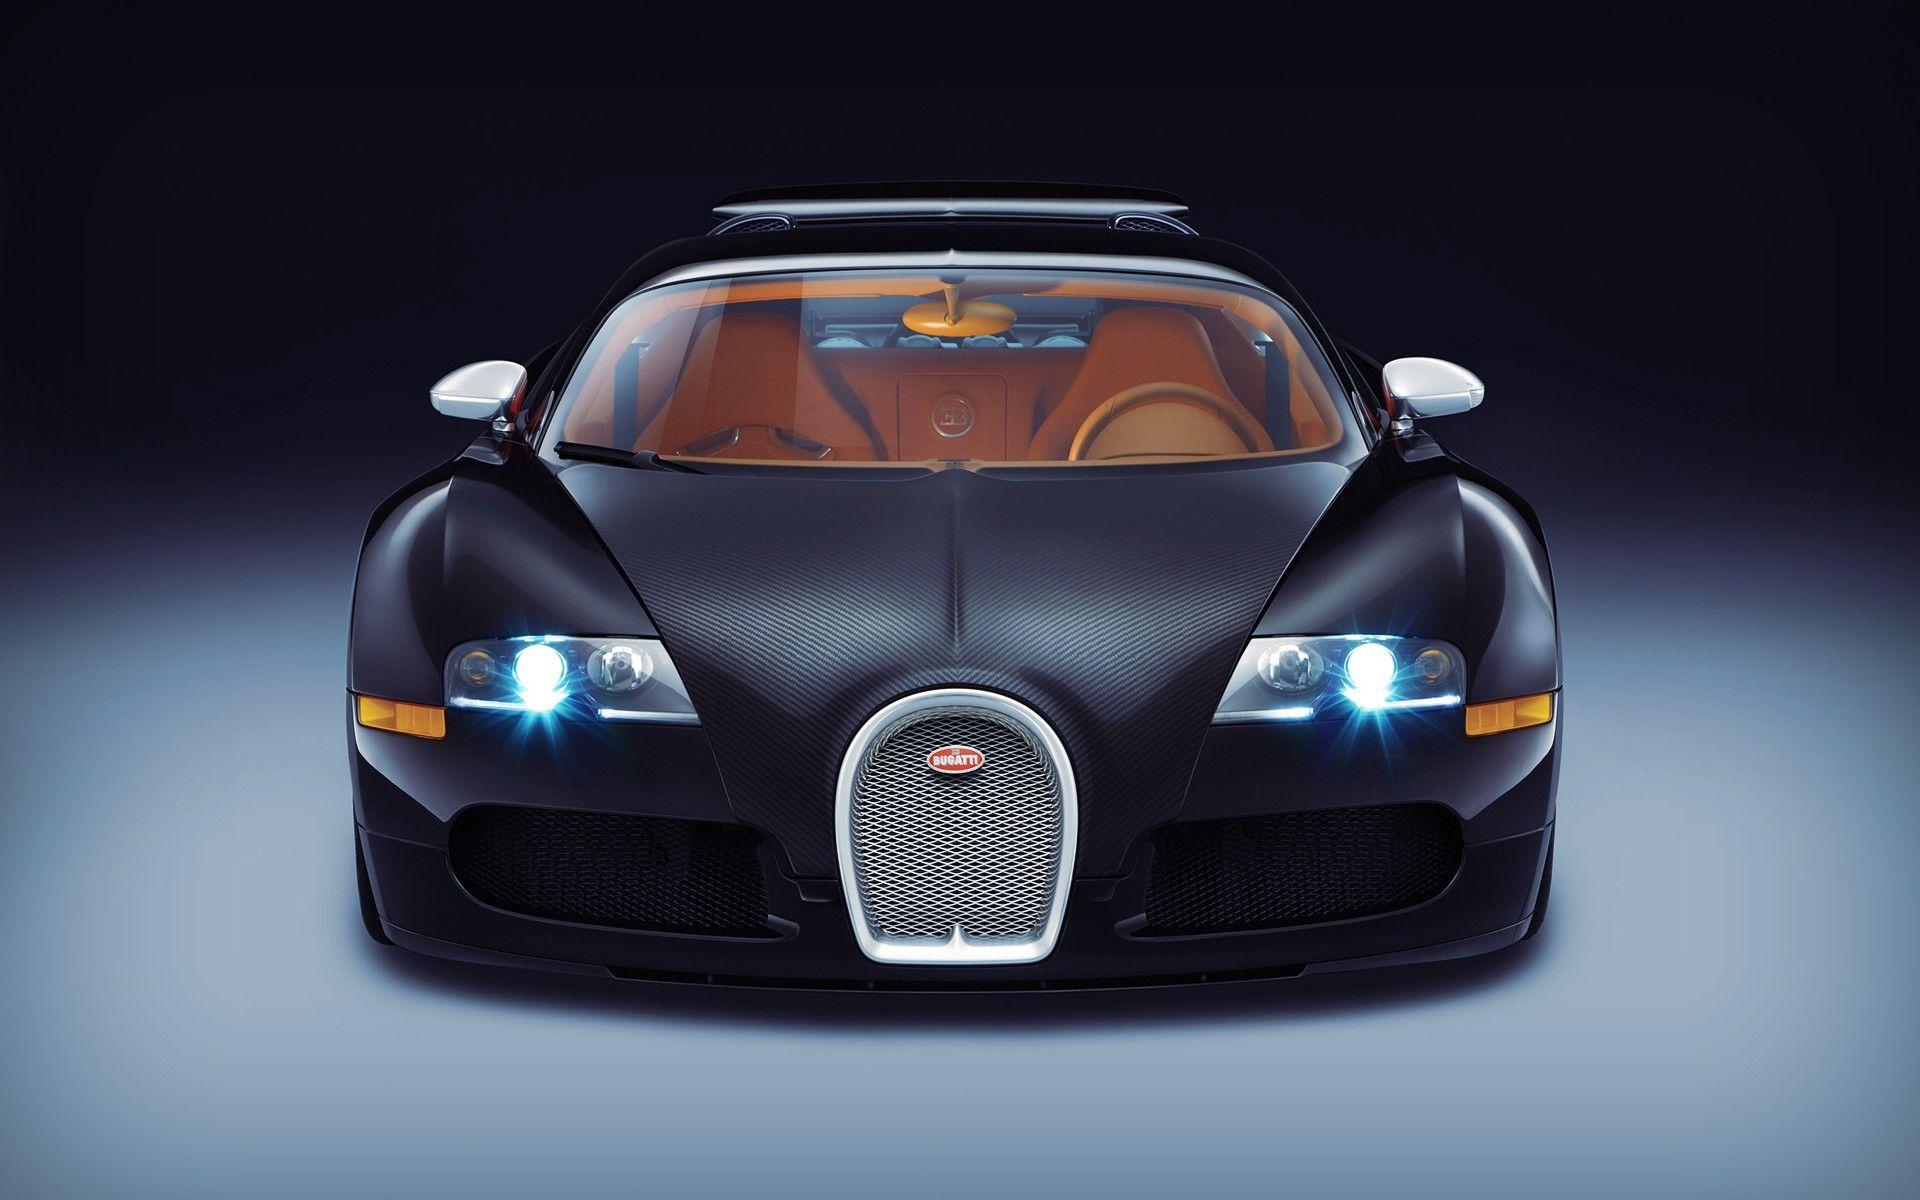 Bugatti Veyron Wallpaper and Background Image